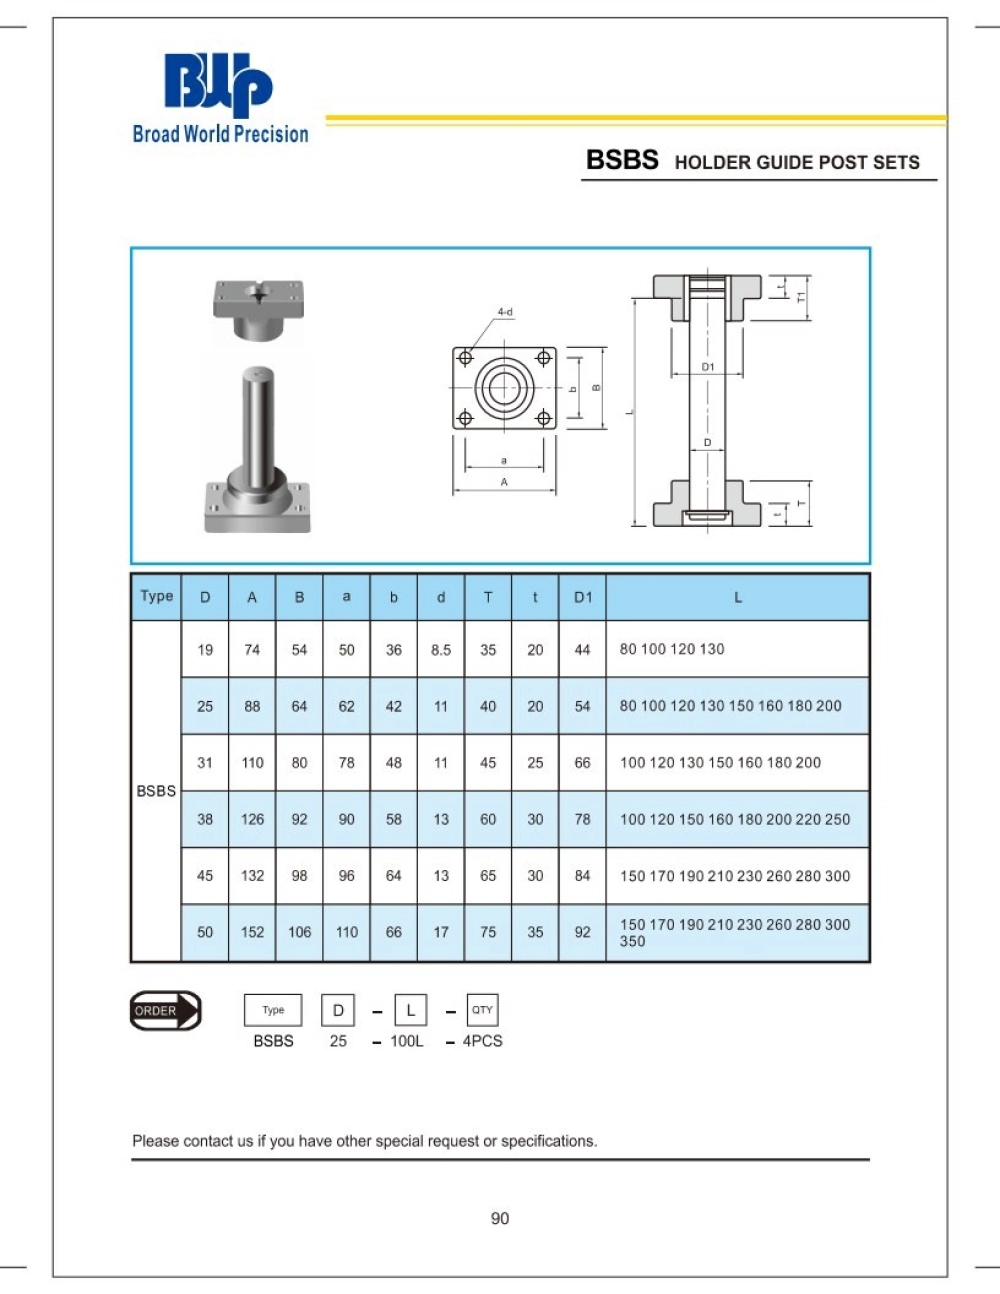 BSBS Holder Guide Post sets